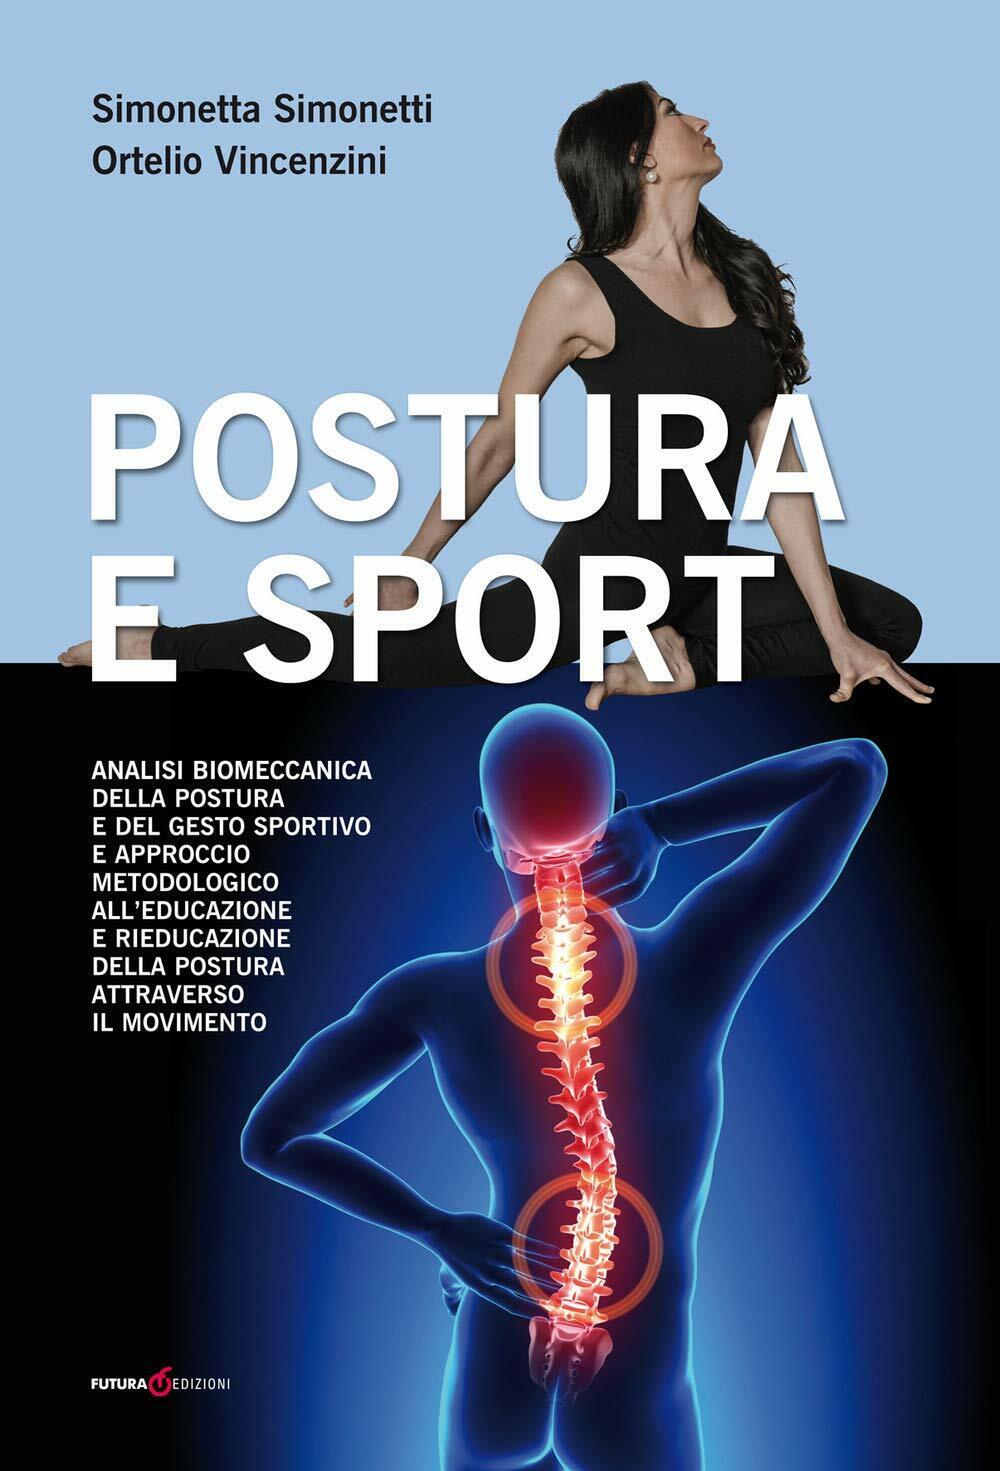 Postura e sport - Simonetta Simonetti, Ortelio Vincenzini - Futura, 2019